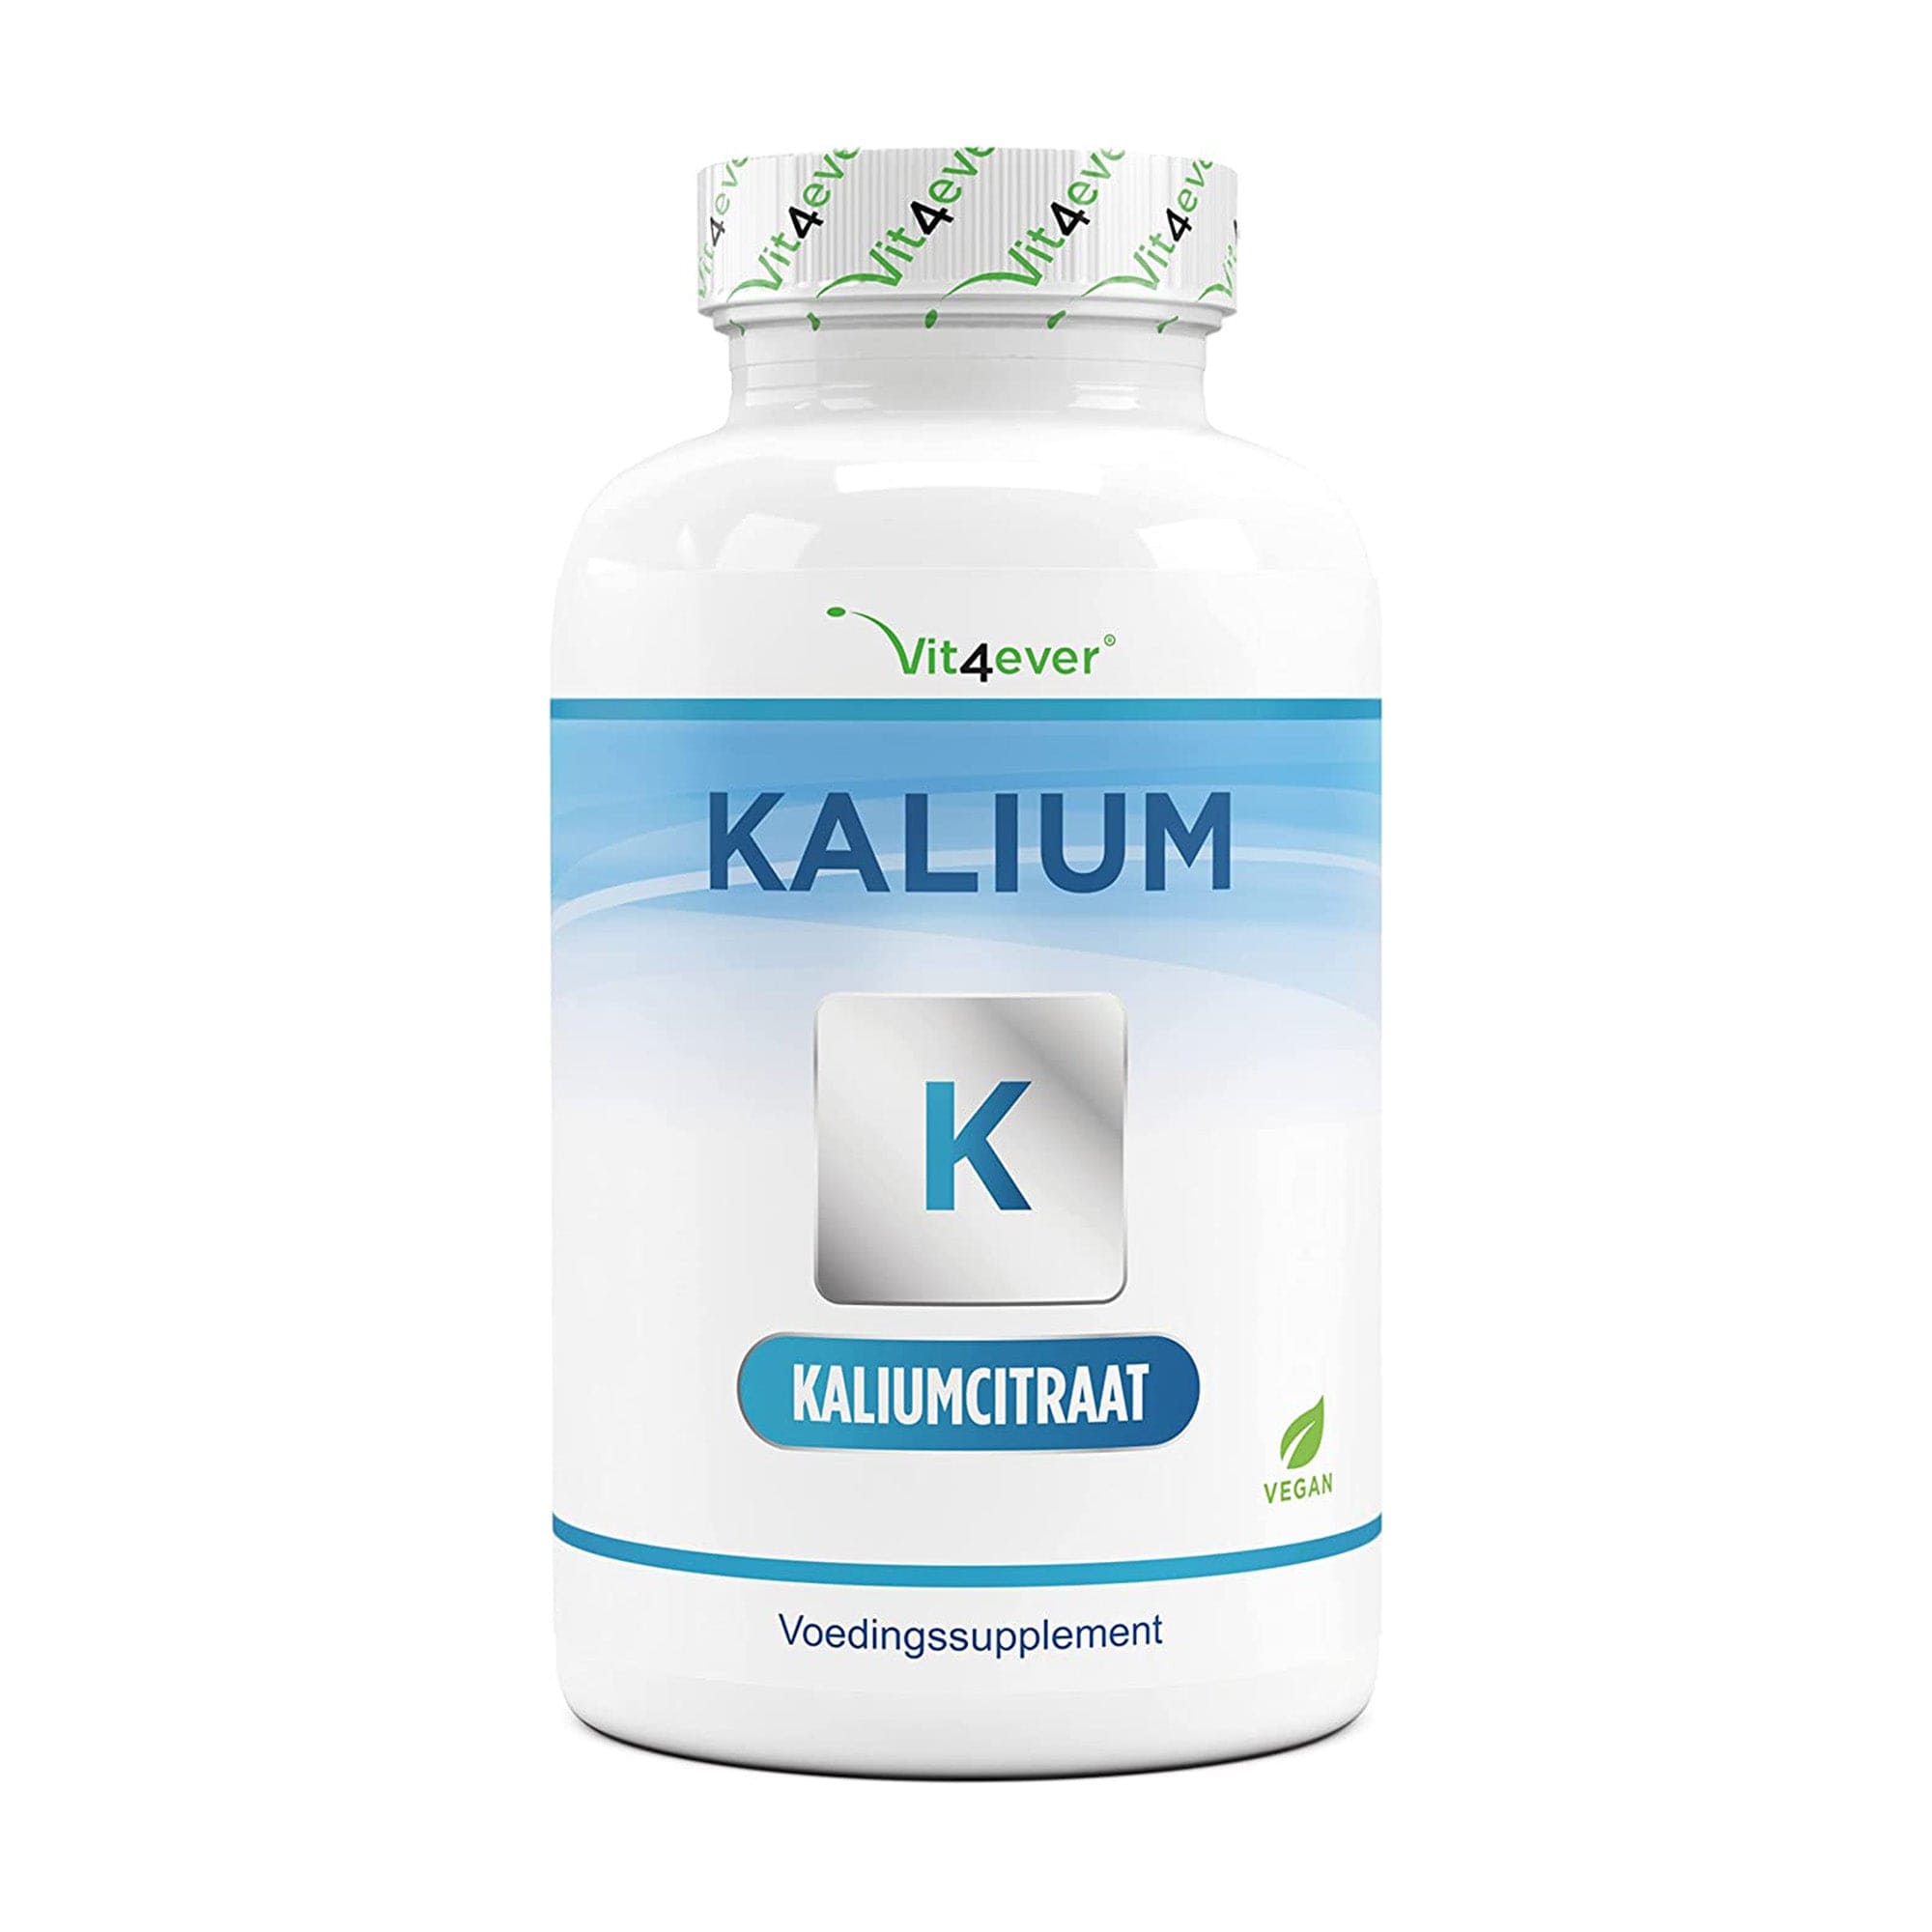 Vit4ever Kalium supplement